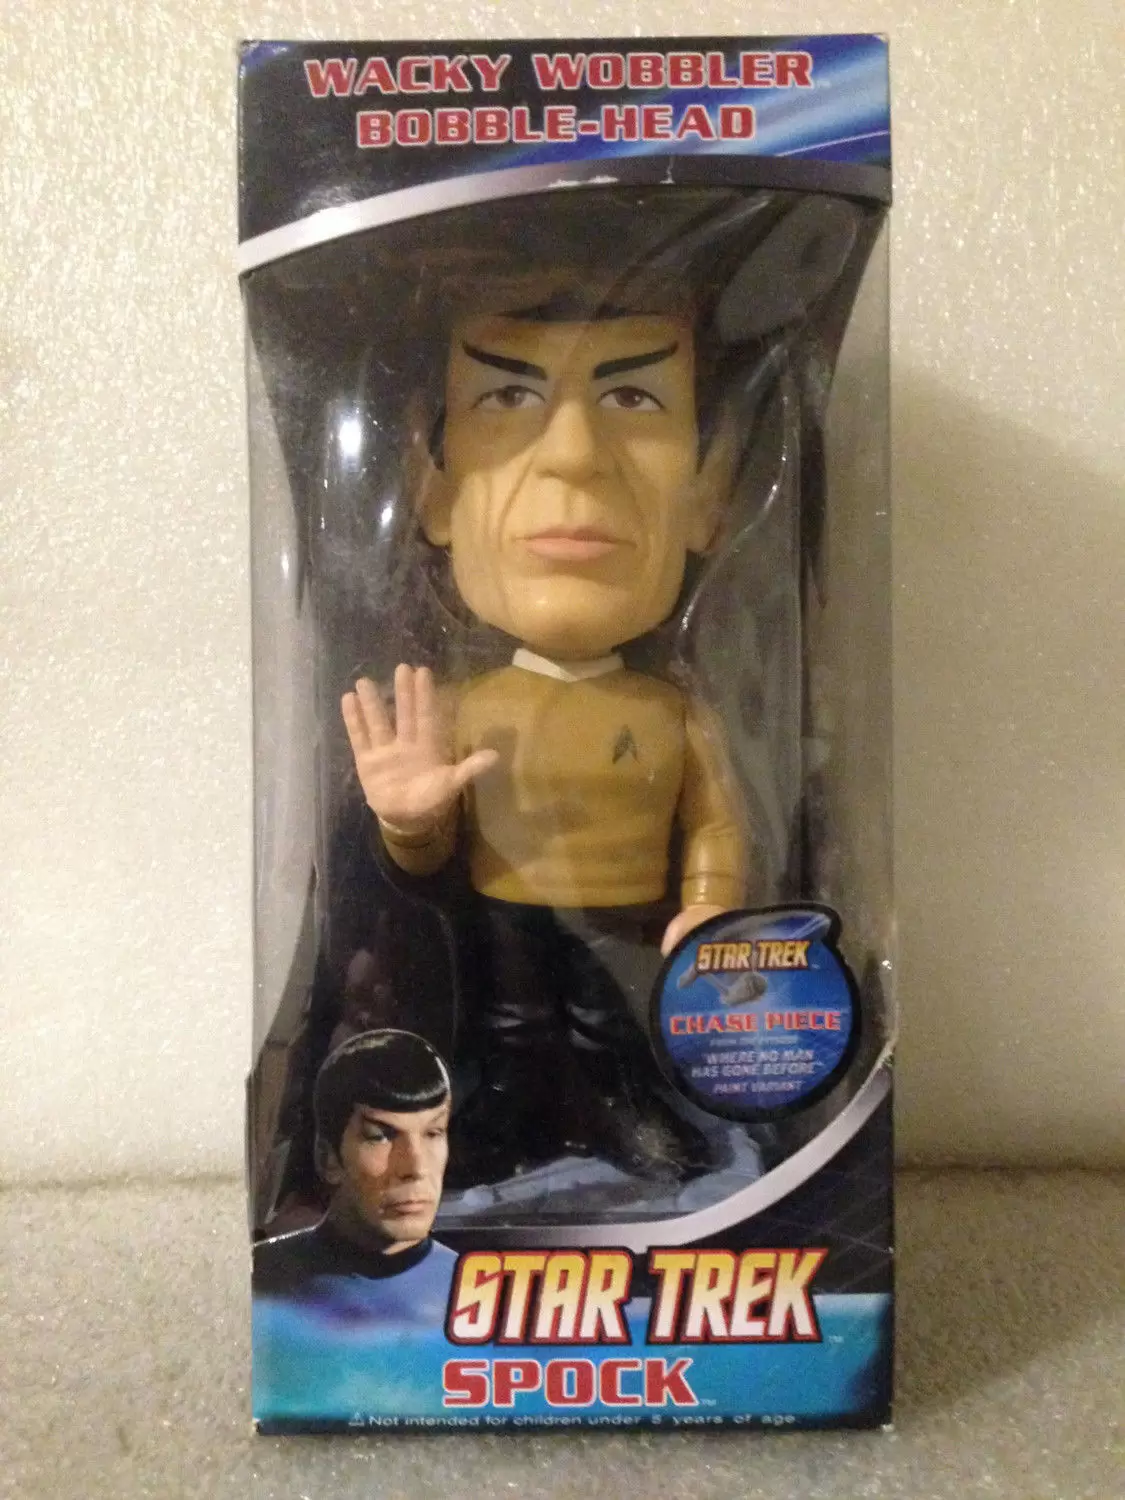 Wacky Wobbler Star Trek - Star Trek - Spock Chase